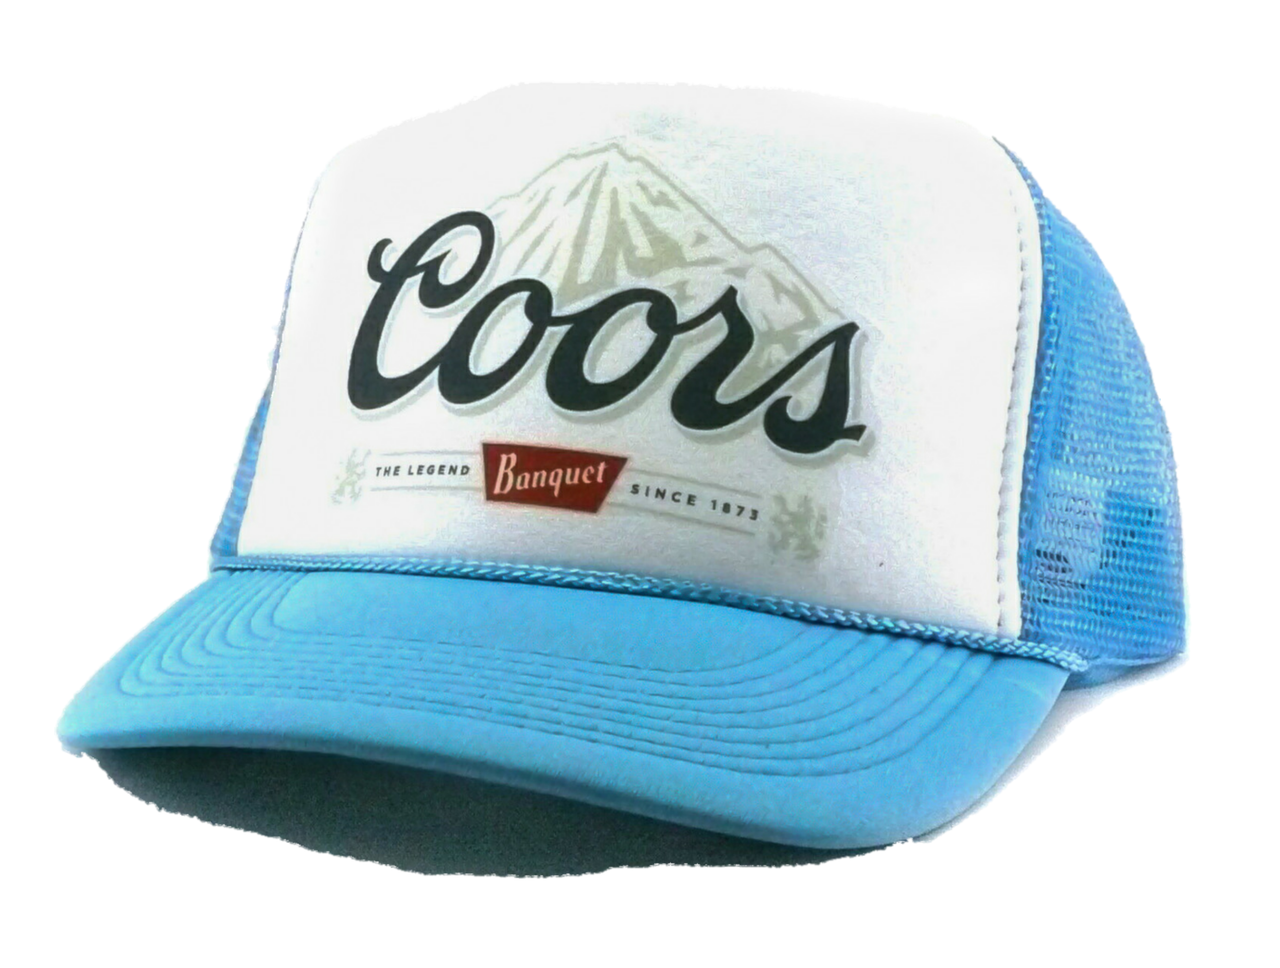 Coors Banquet Beer Hat, Coors Banquet hat, Coors Cap, Trucker Hat, Beer Hats